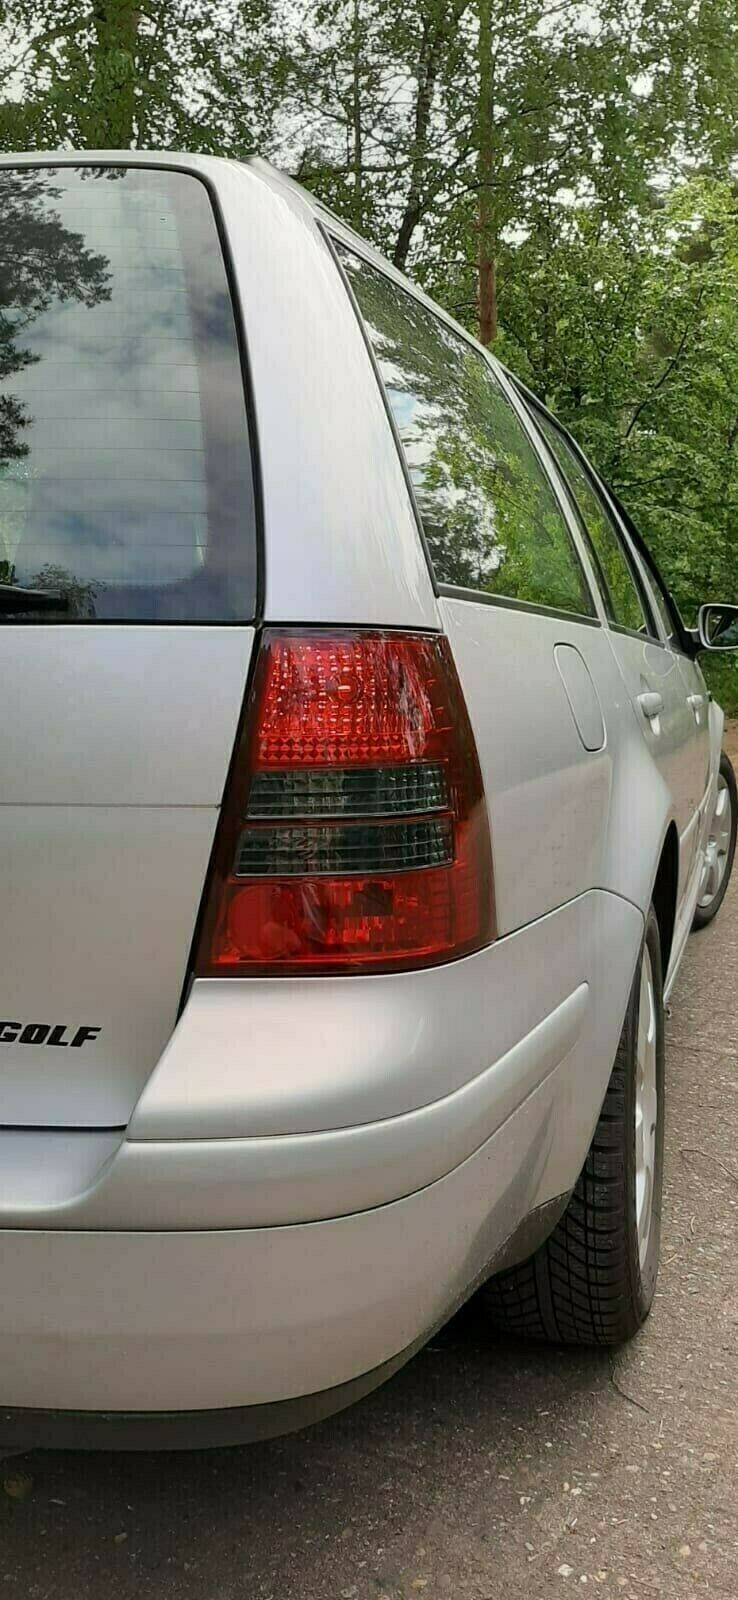 Für VW Golf 4 LED Kennzeichenbeleuchtung